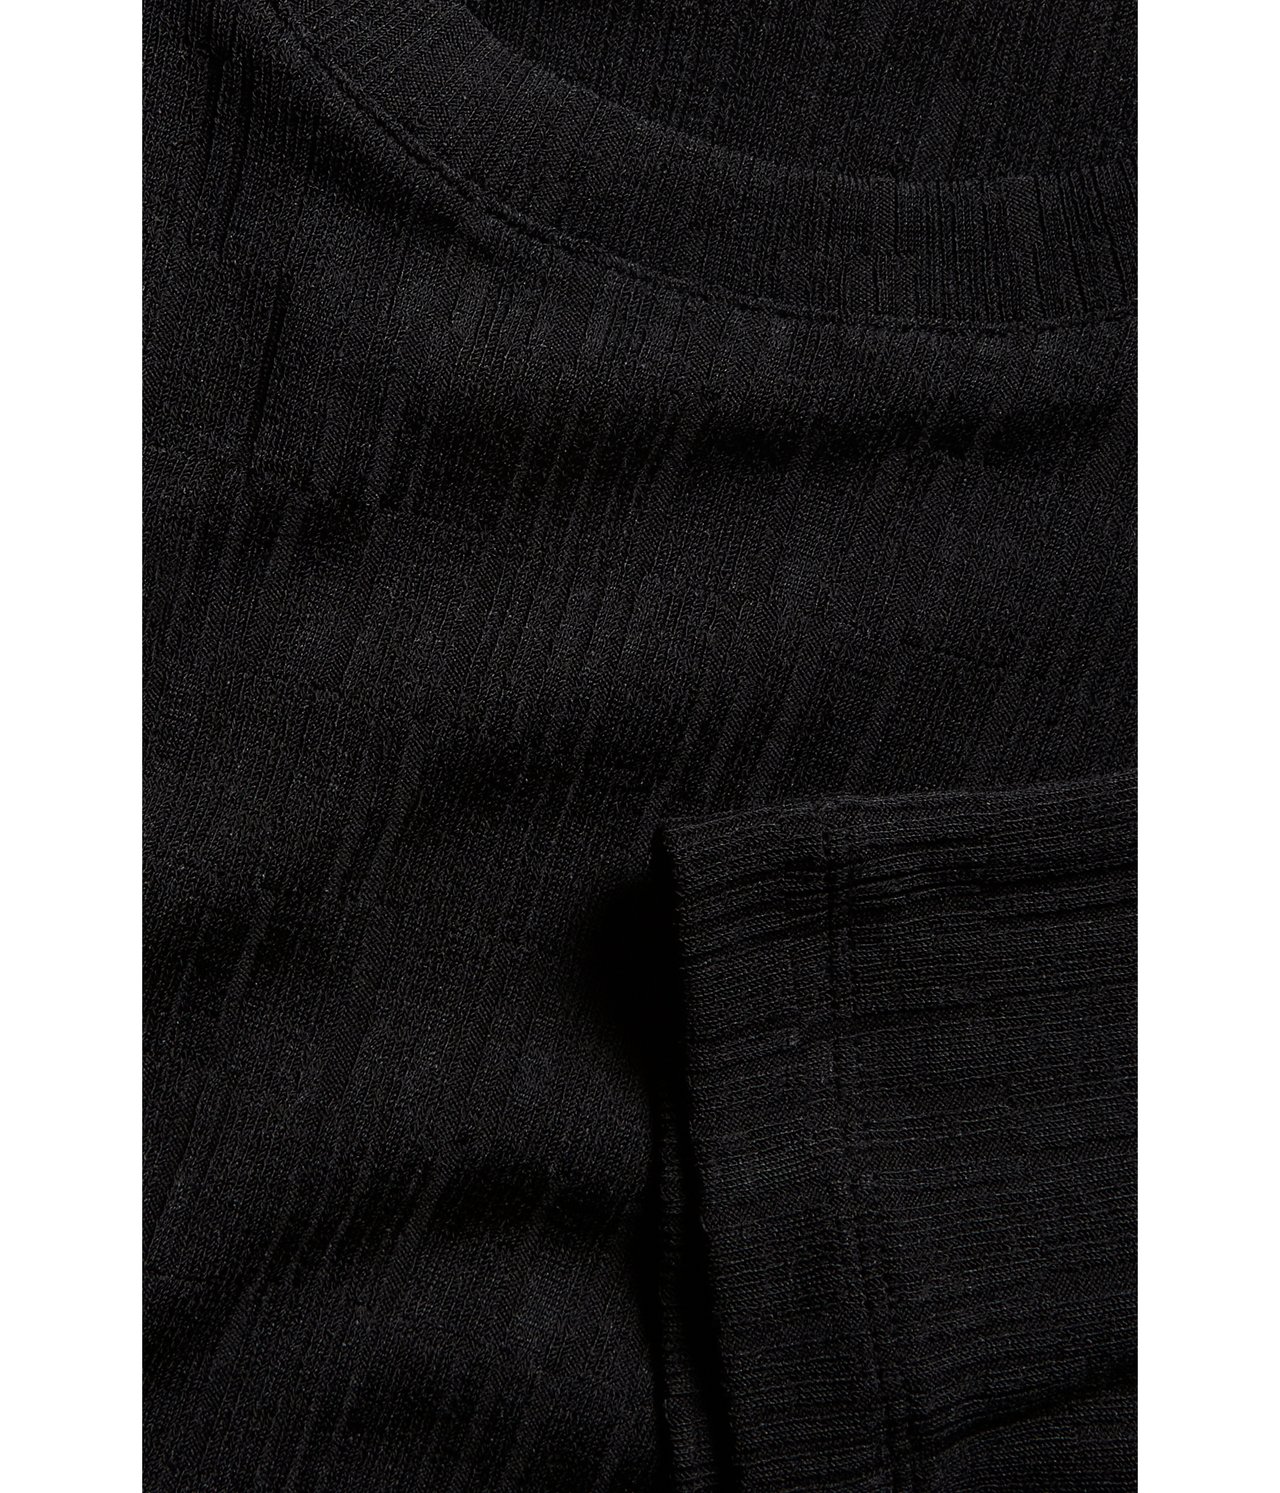 Lyhyemmän mallinen paita Musta - null - 4